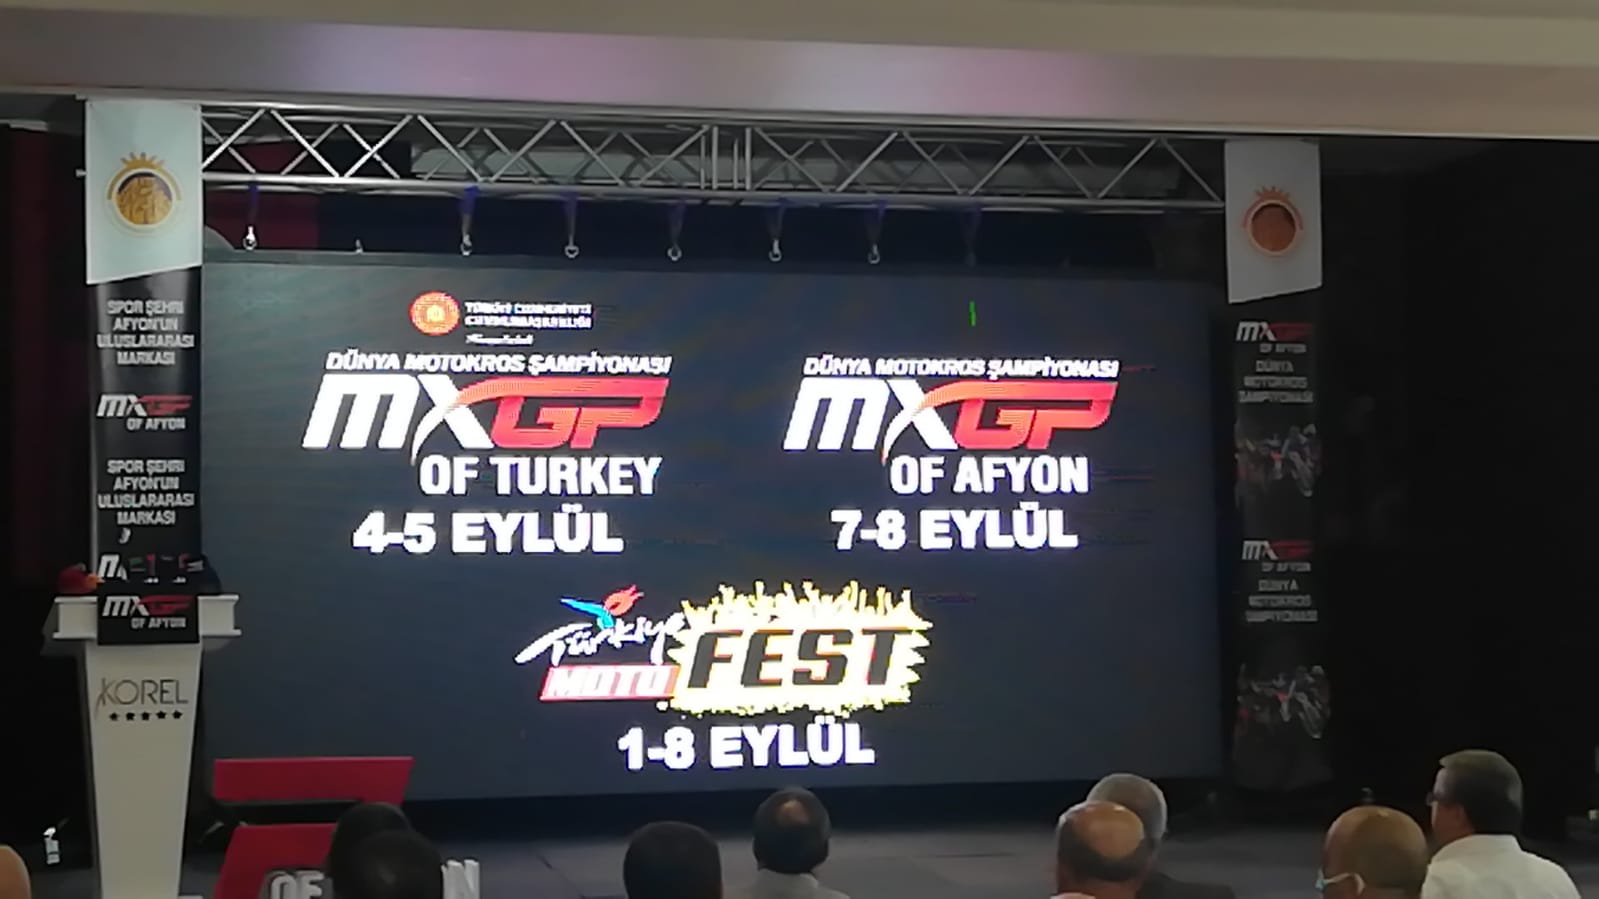 Afyon’un ismi Dünya liginde: Dünya Motokros Şampiyonası’nda Afyonkarahisar’ın ismini taşıyan özel etap gerçekleştirilecek